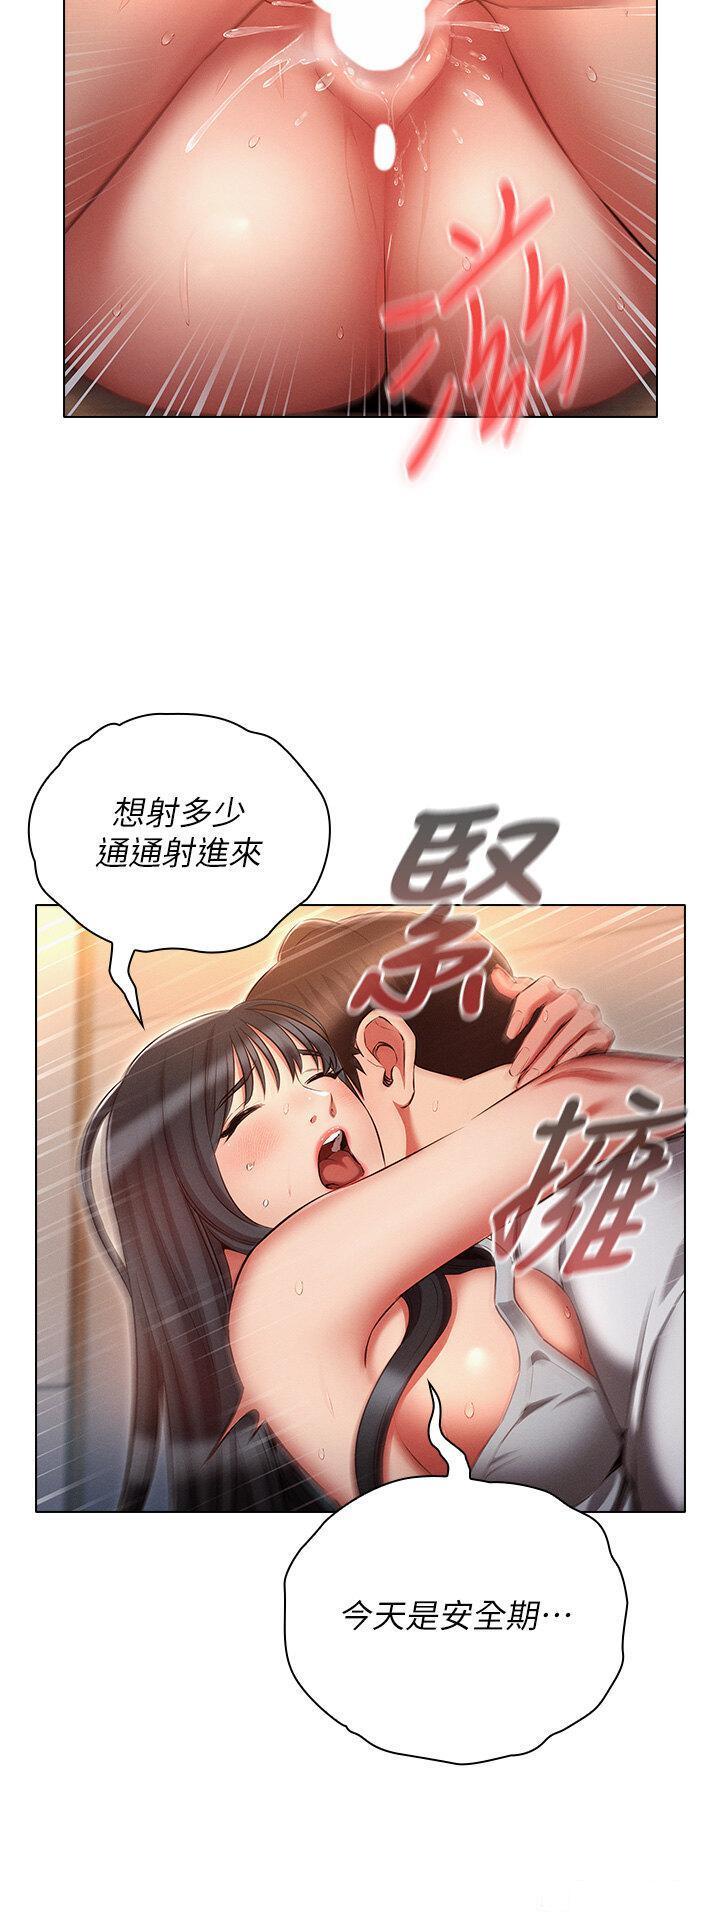 韩国污漫画 魯蛇的多重宇宙 第59话_鲜嫩可口的蜜汁鲍鱼 32